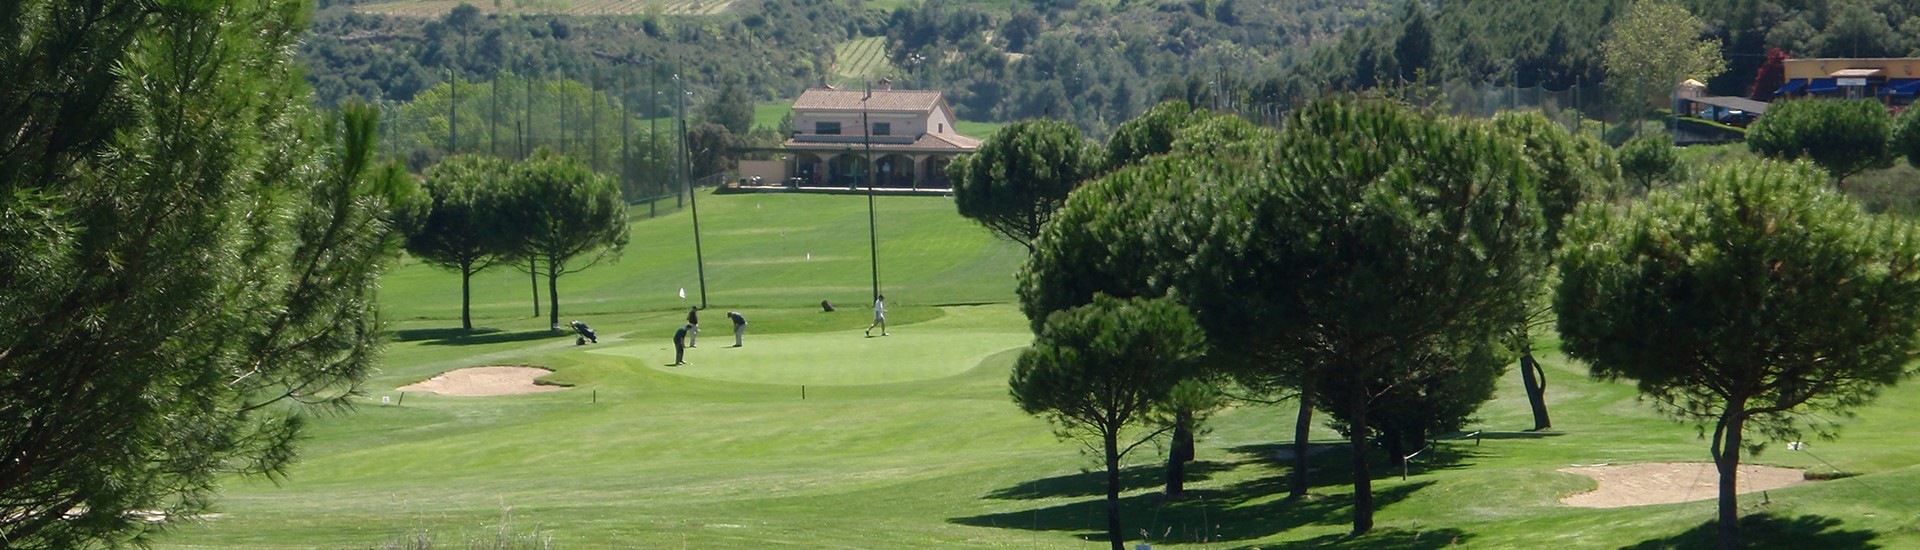 Golf La Roqueta